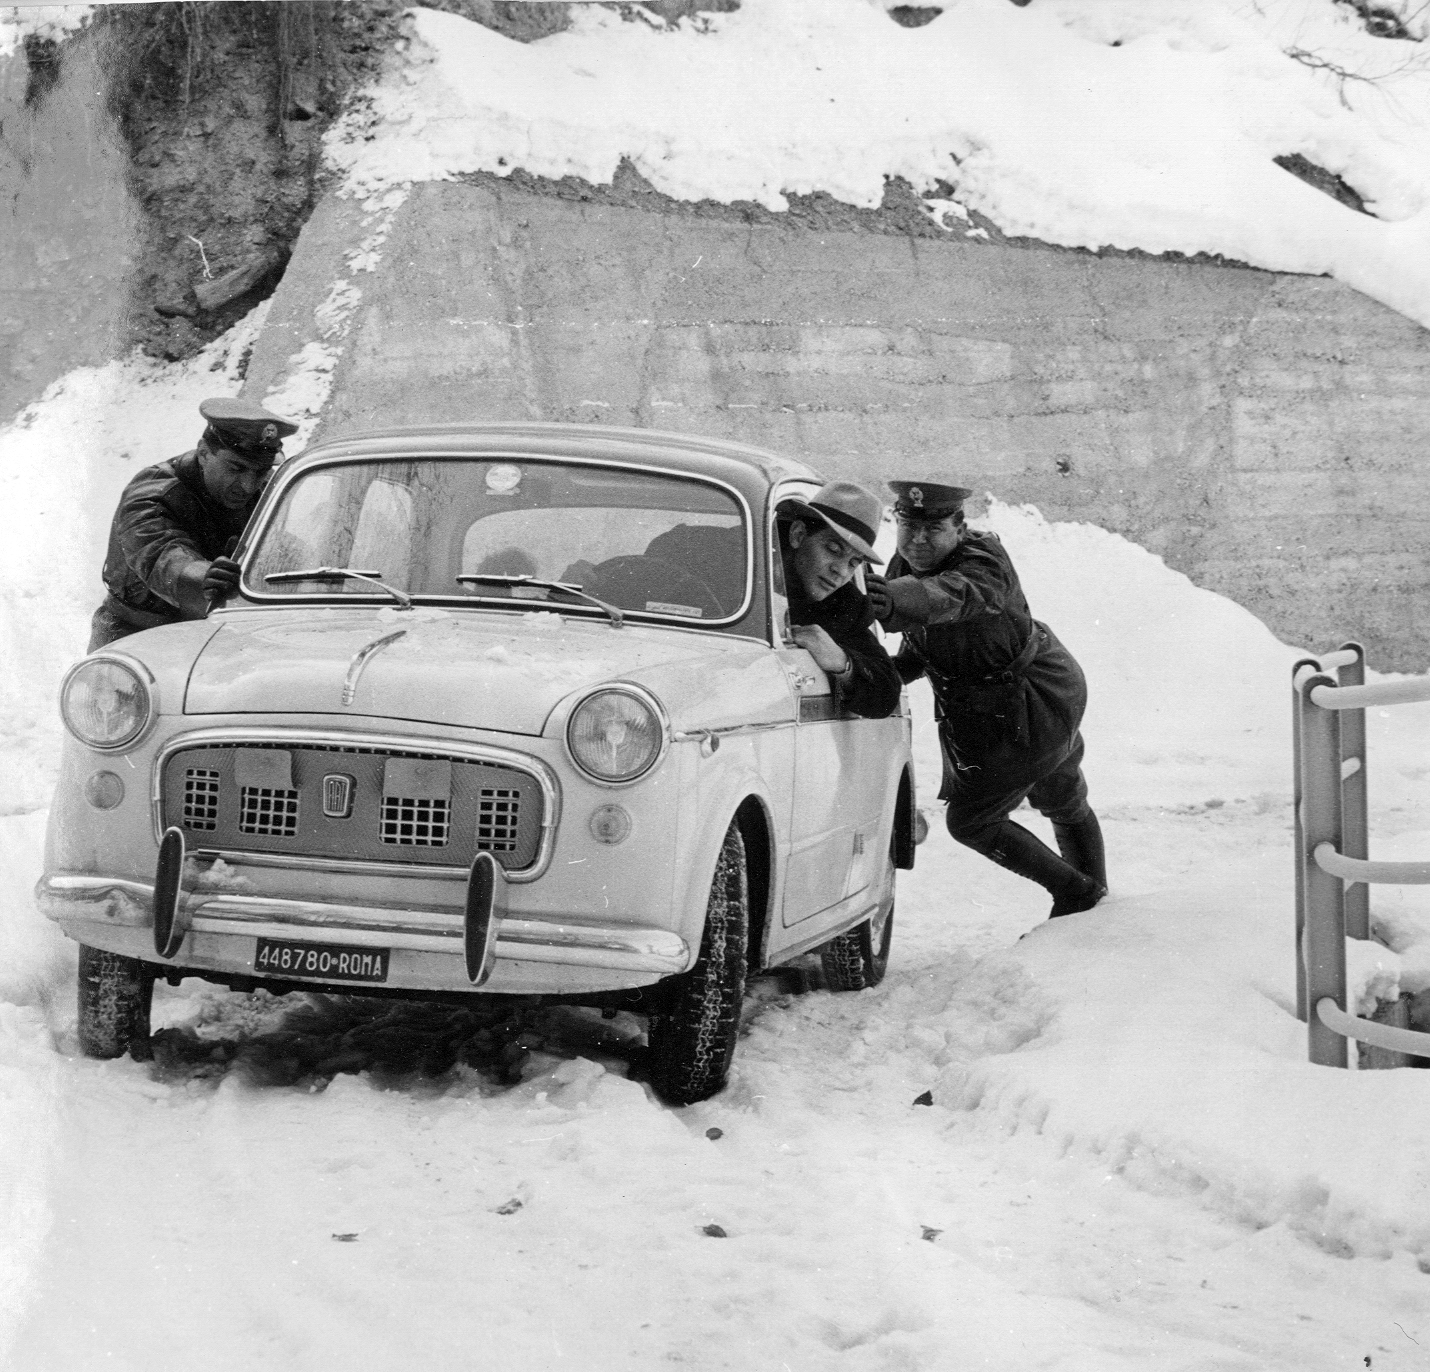 1961, operatori impegnati in servizio di assistenza ad automobilista bloccato dalla neve